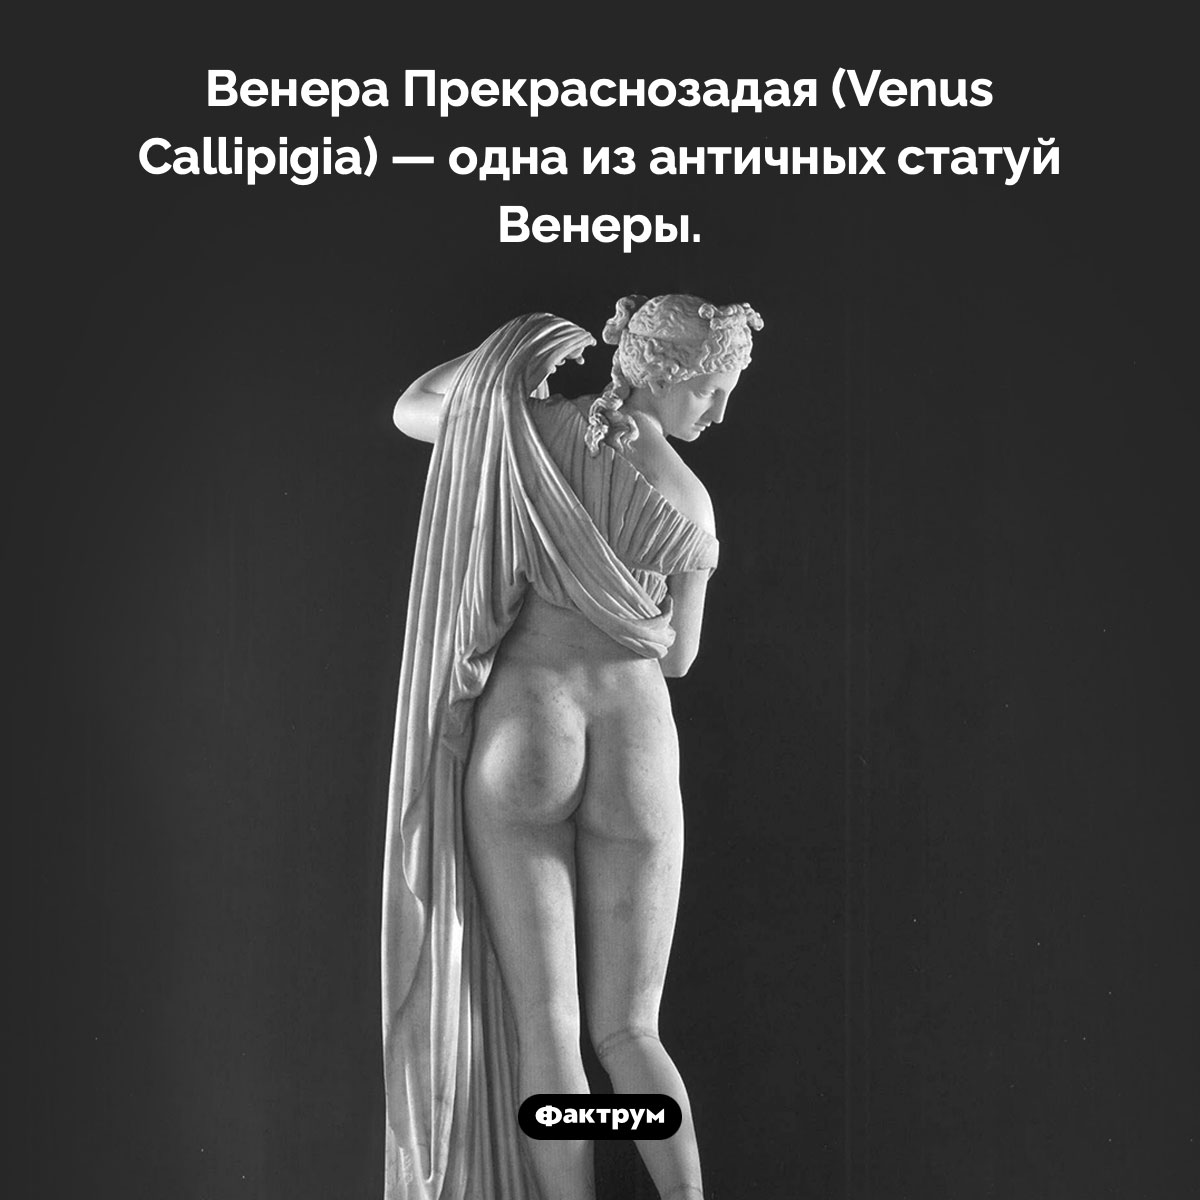 Венера Каллипига. Венера Прекраснозадая — одна из античных статуй Венеры.